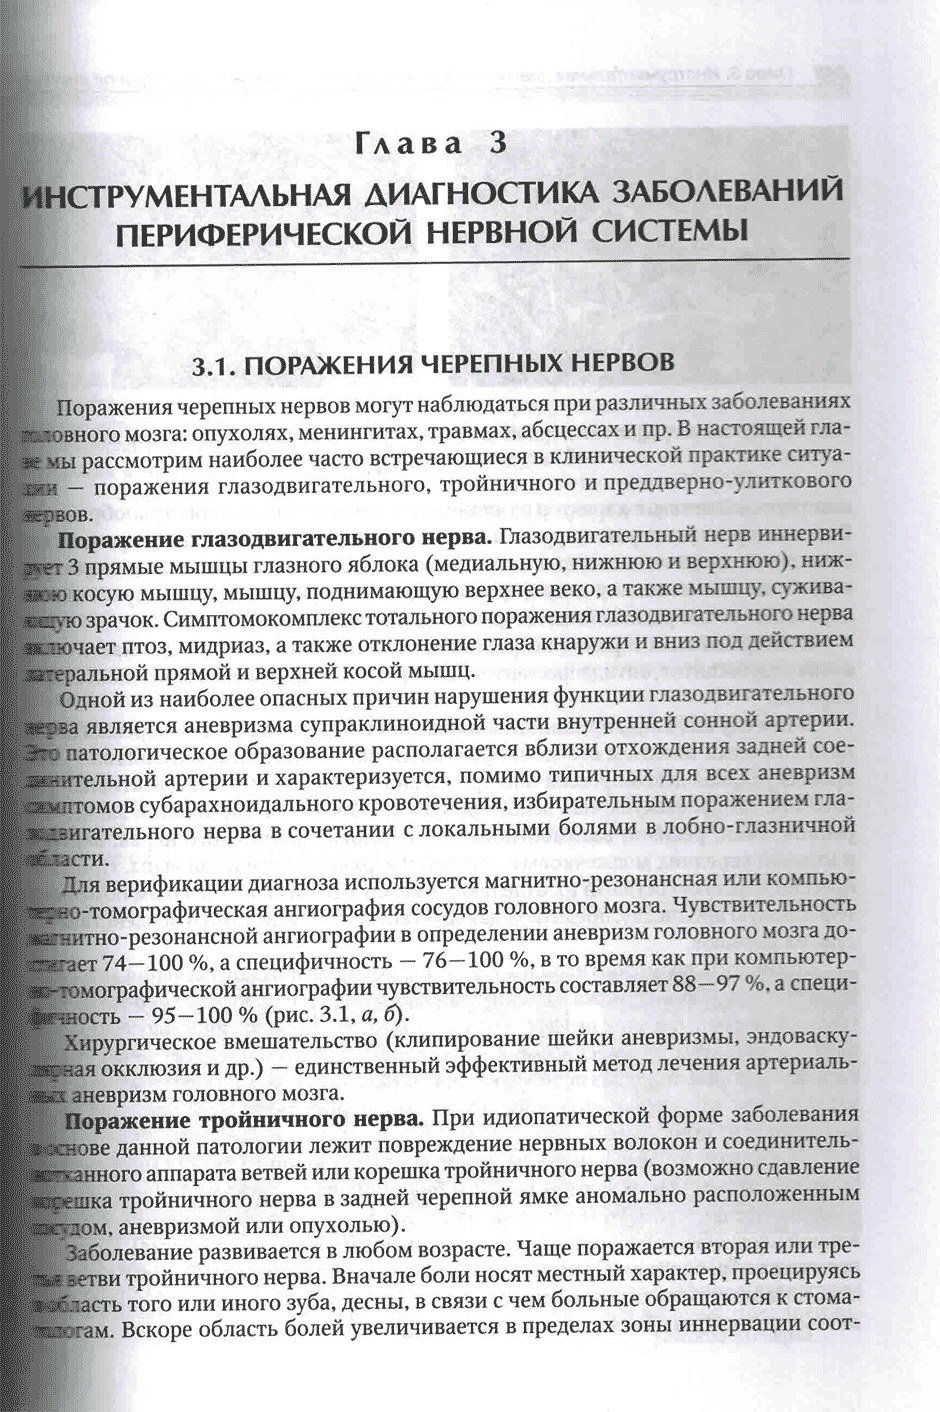 Пример страницы из книги "Инструментальная диагностика в неврологии" - Литвиненко И. В., Одинак М. М.  